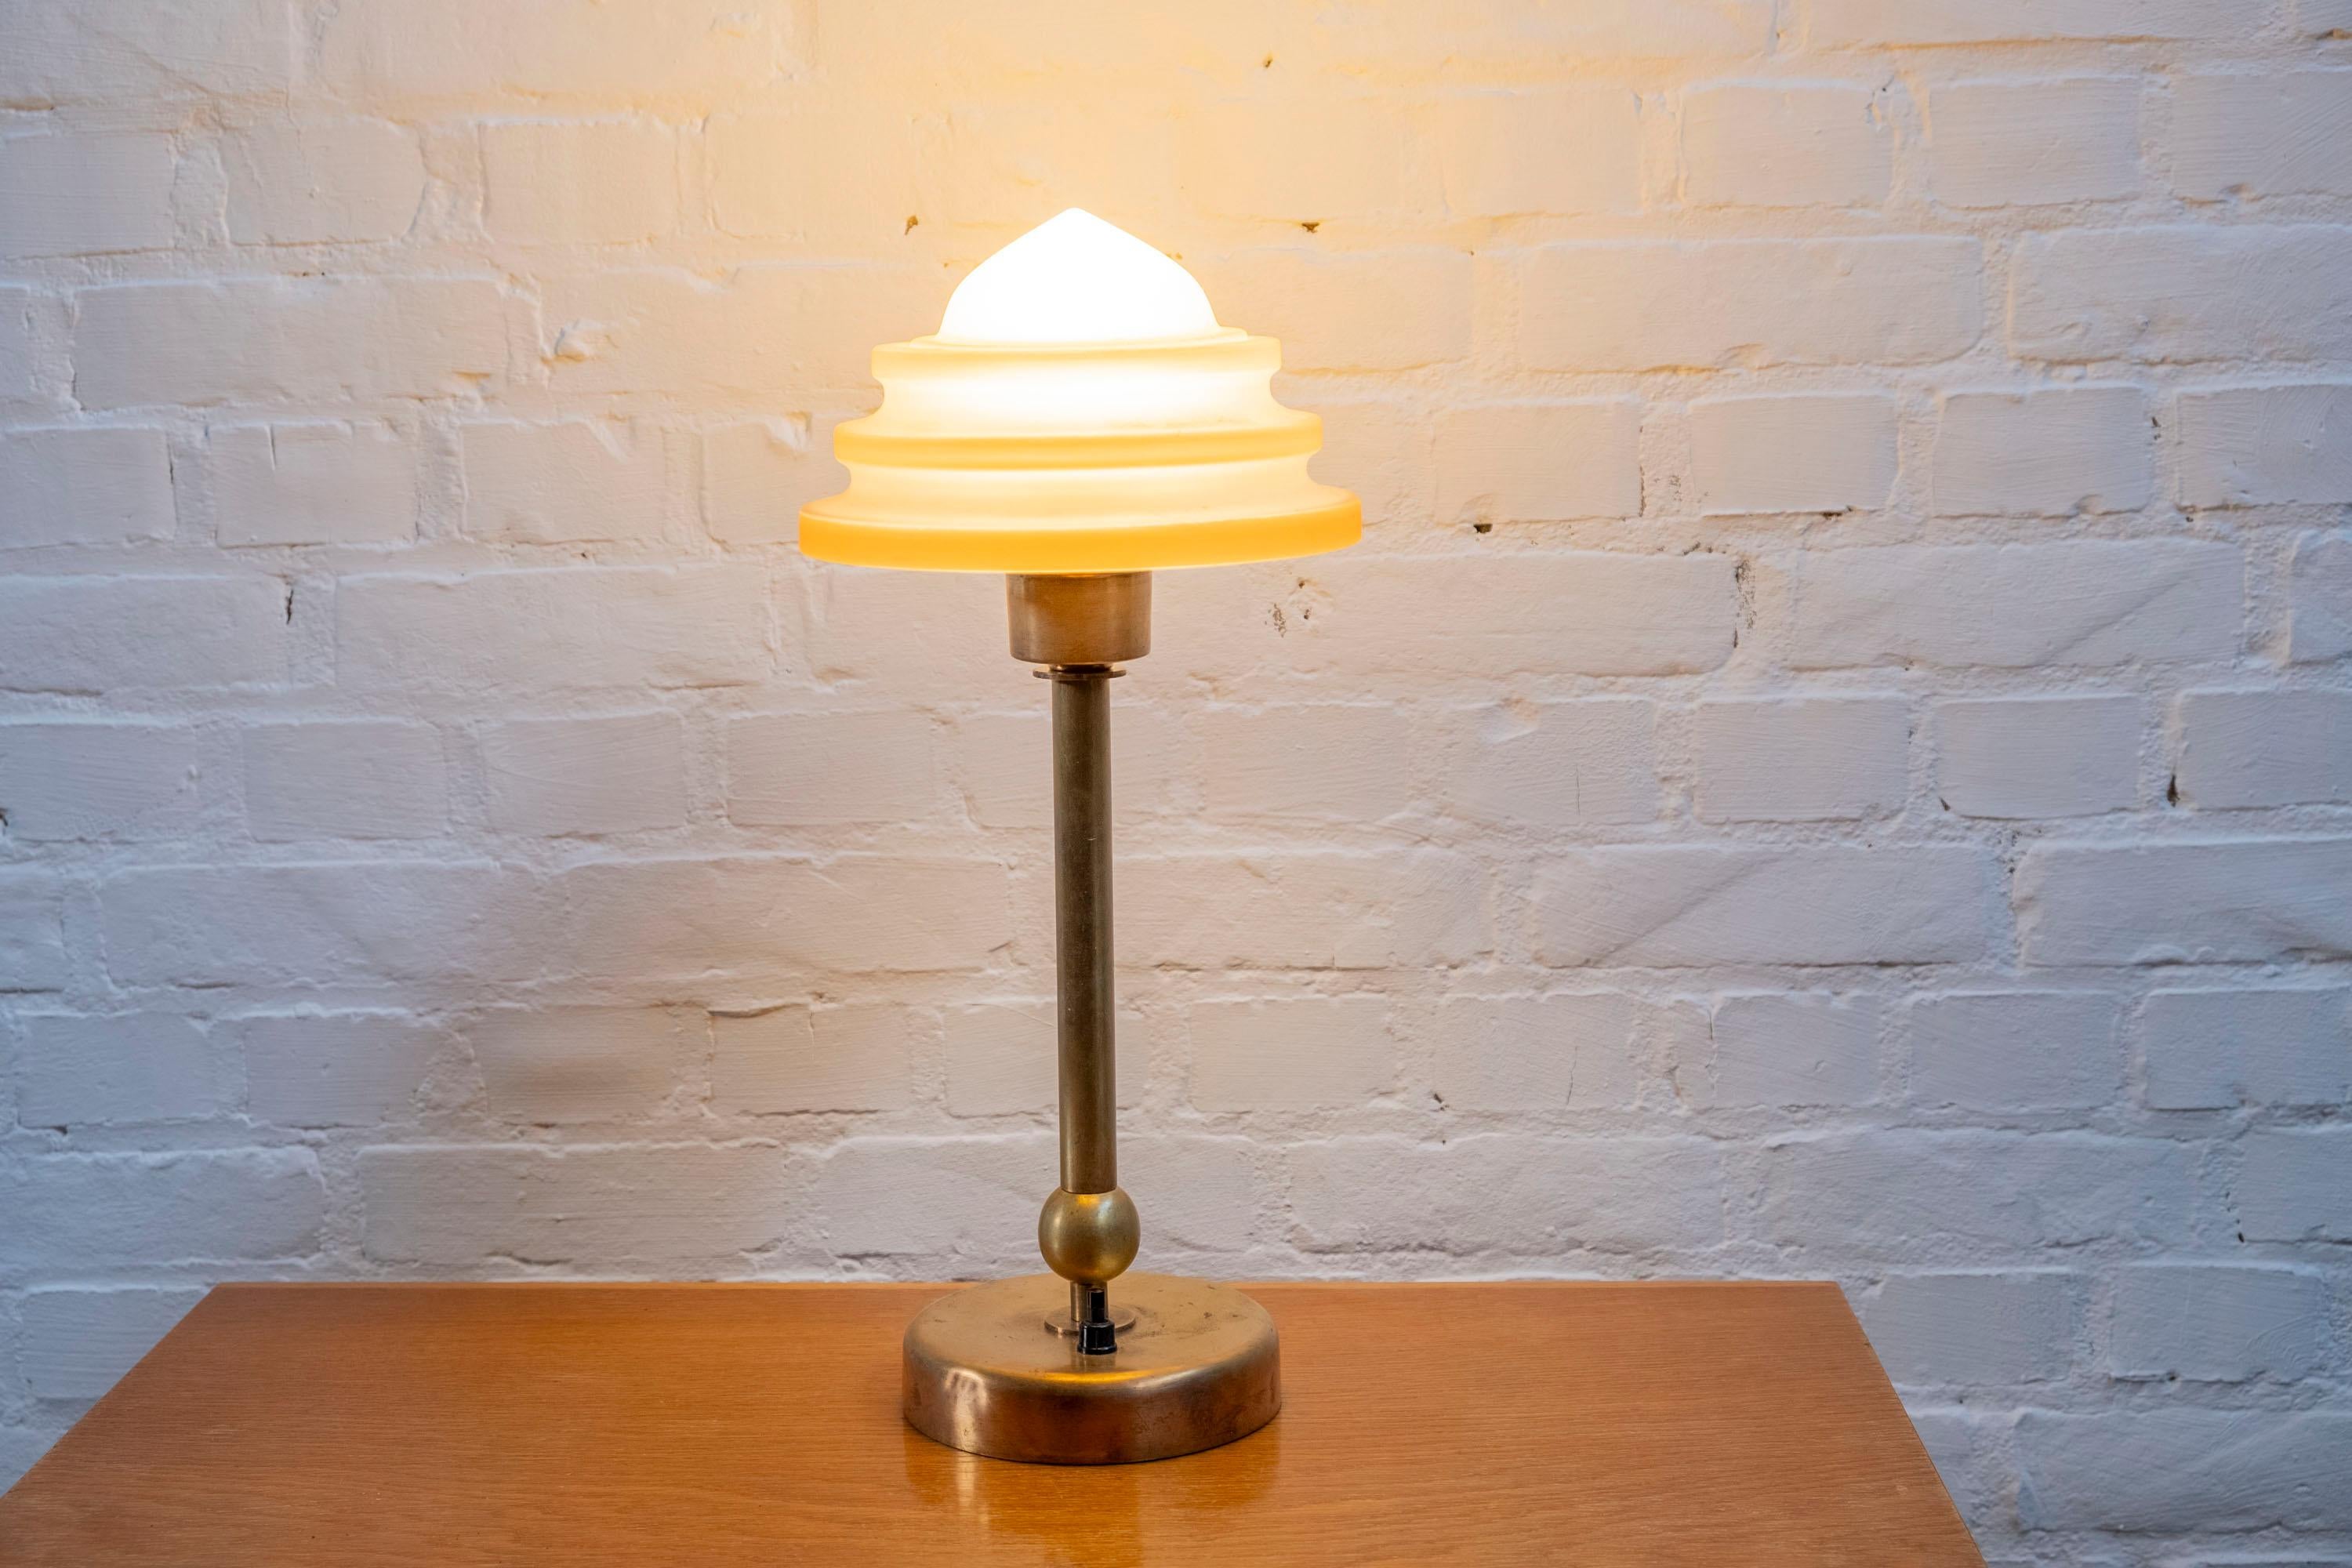 Lampe de table Art déco en laiton et verre par Fog & Mørup du Danemark. La lampe présente la rare variante de la lampe dite 